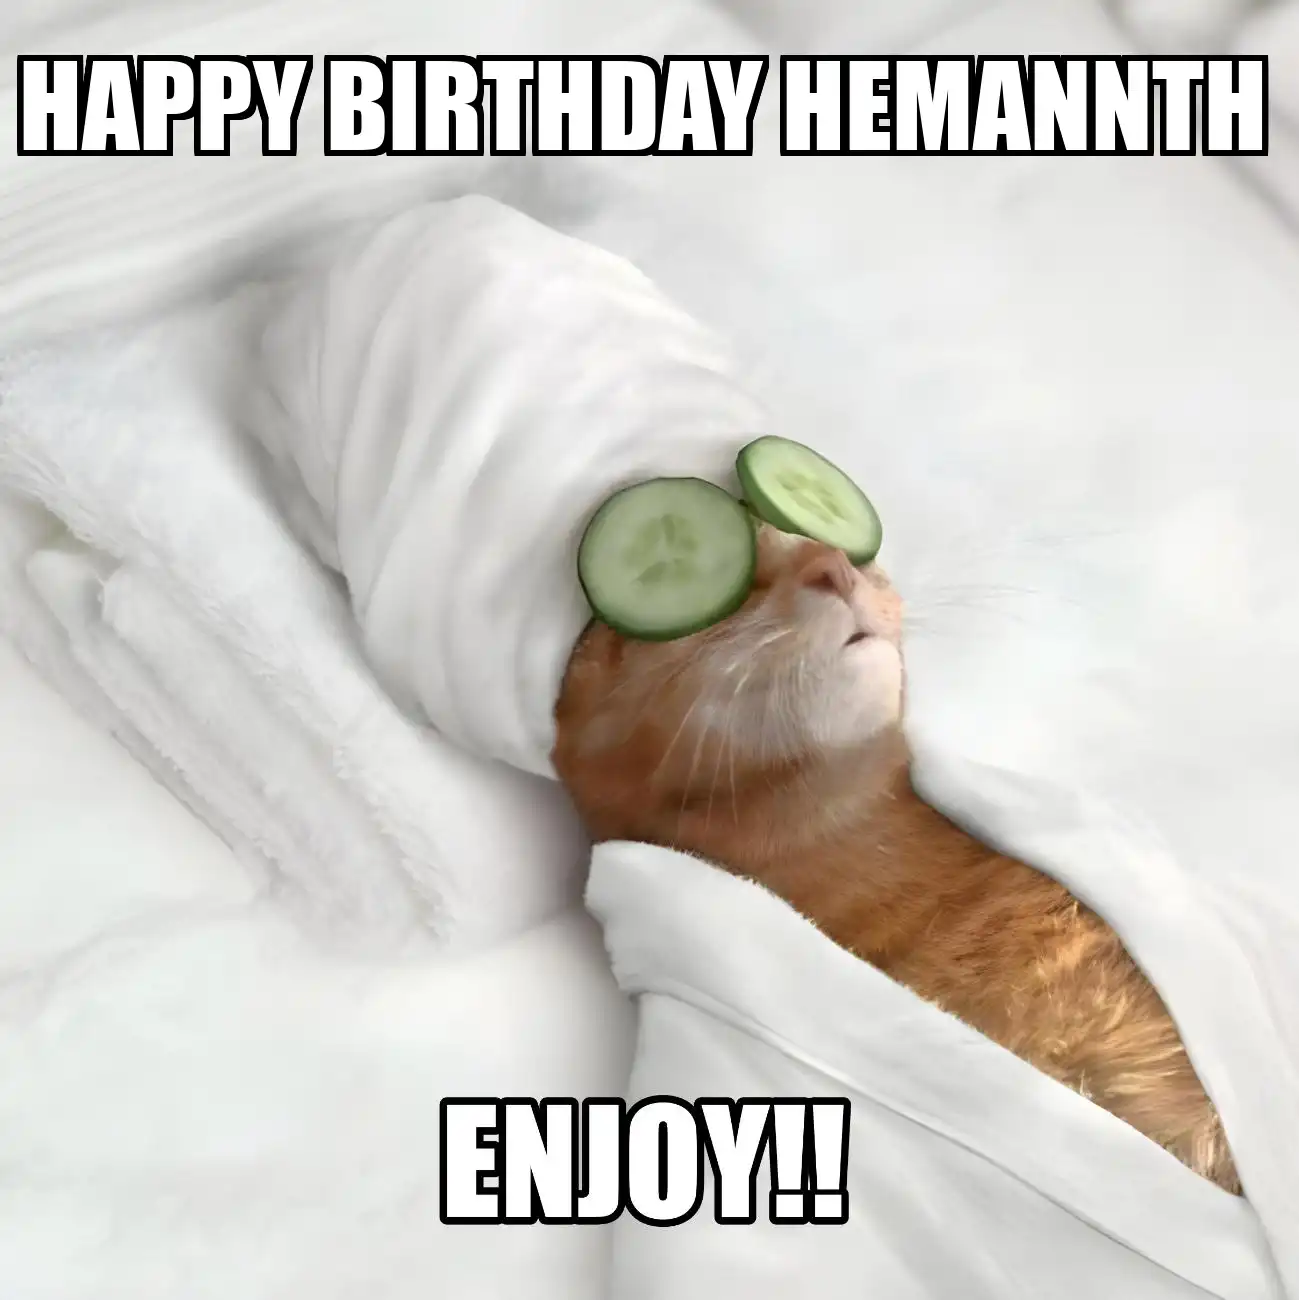 Happy Birthday Hemannth Enjoy Cat Meme